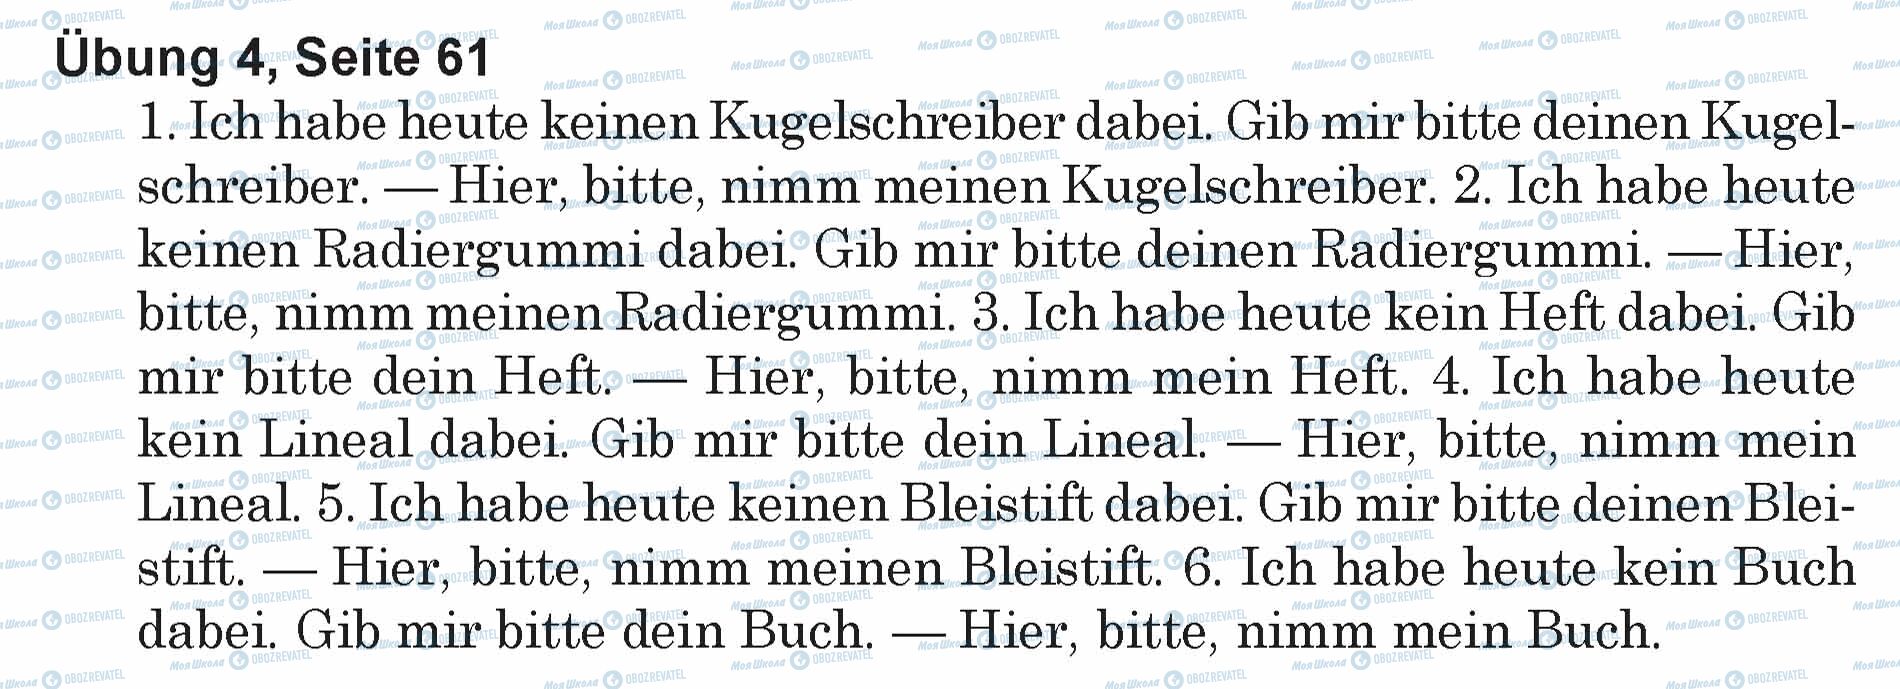 ГДЗ Немецкий язык 5 класс страница Ubung 4, Seite 61